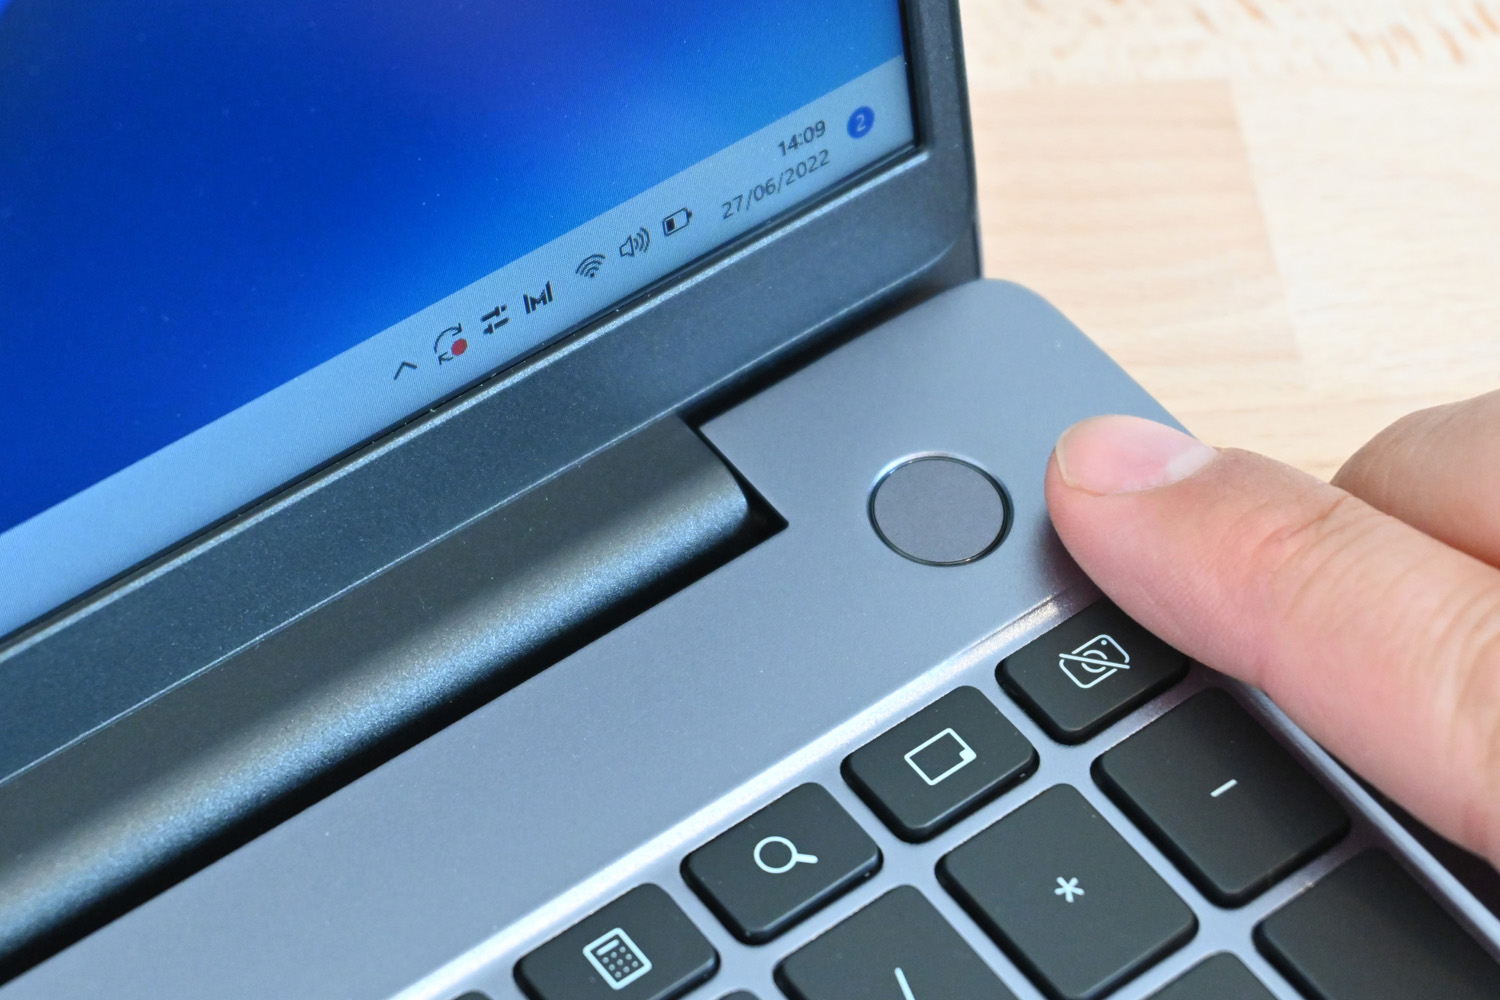 Huawei MateBook D 16 laptop hands-on review Stuff - fingerprint sensor